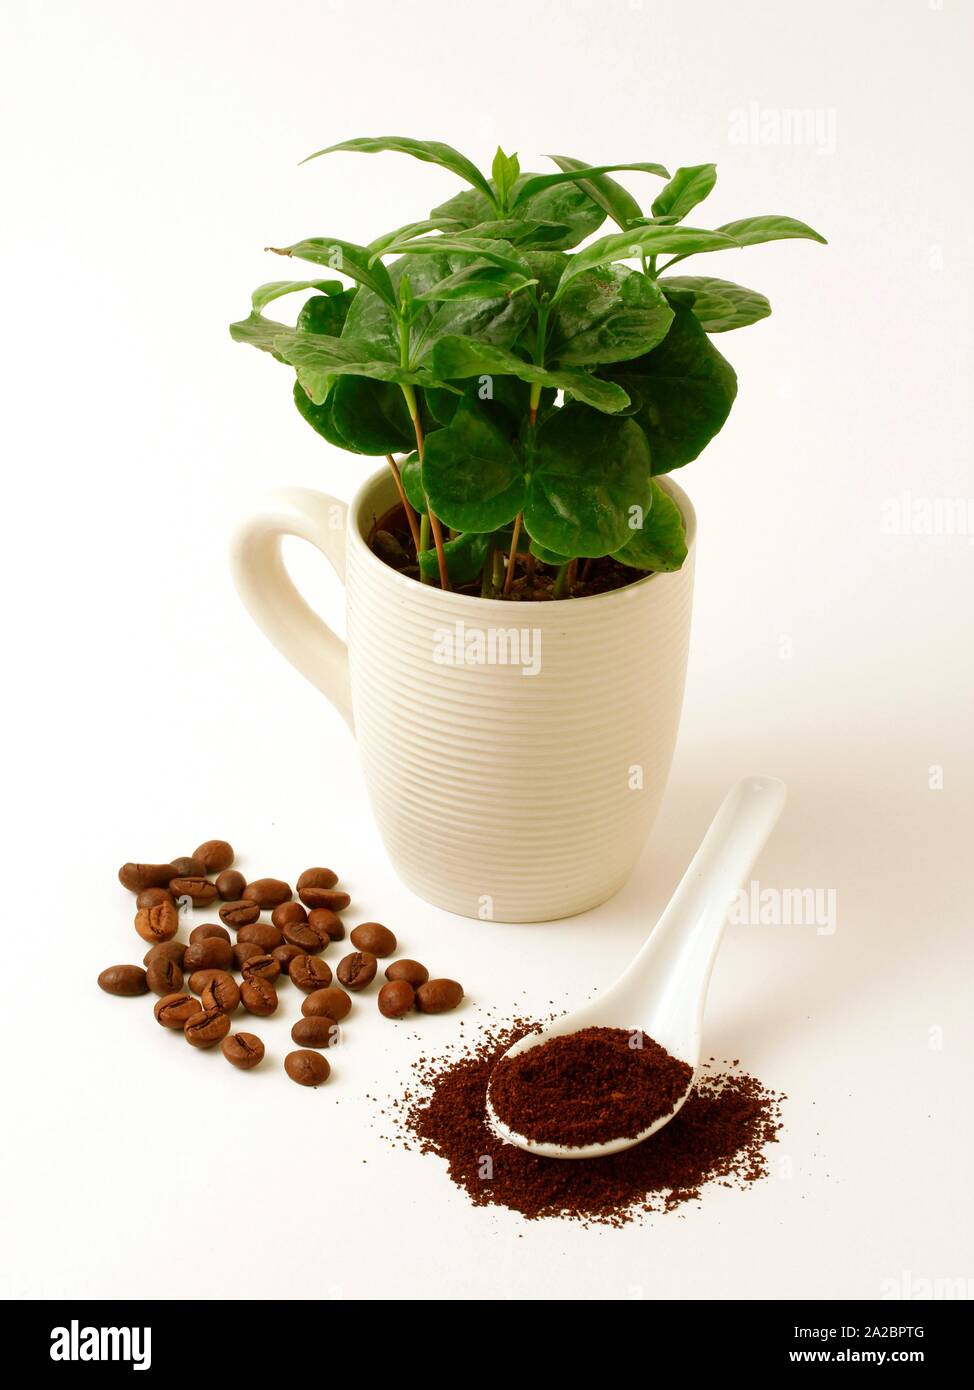 Kaffee Pflanzen und Samen Stockfotografie - Alamy